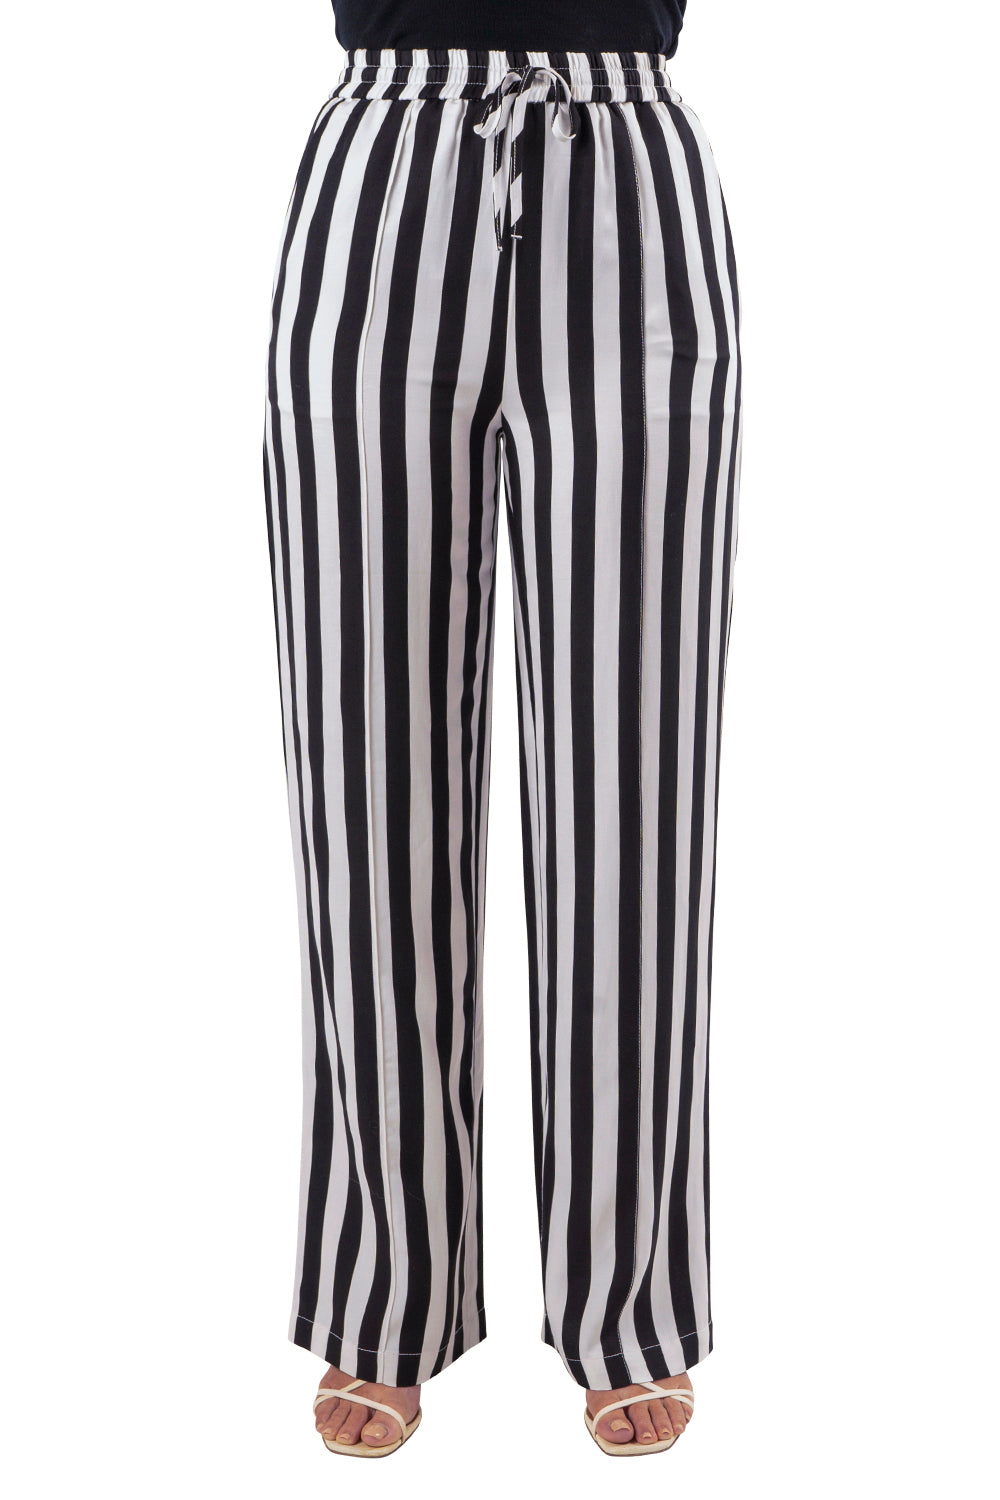 Striped Jordan Pants - Black White